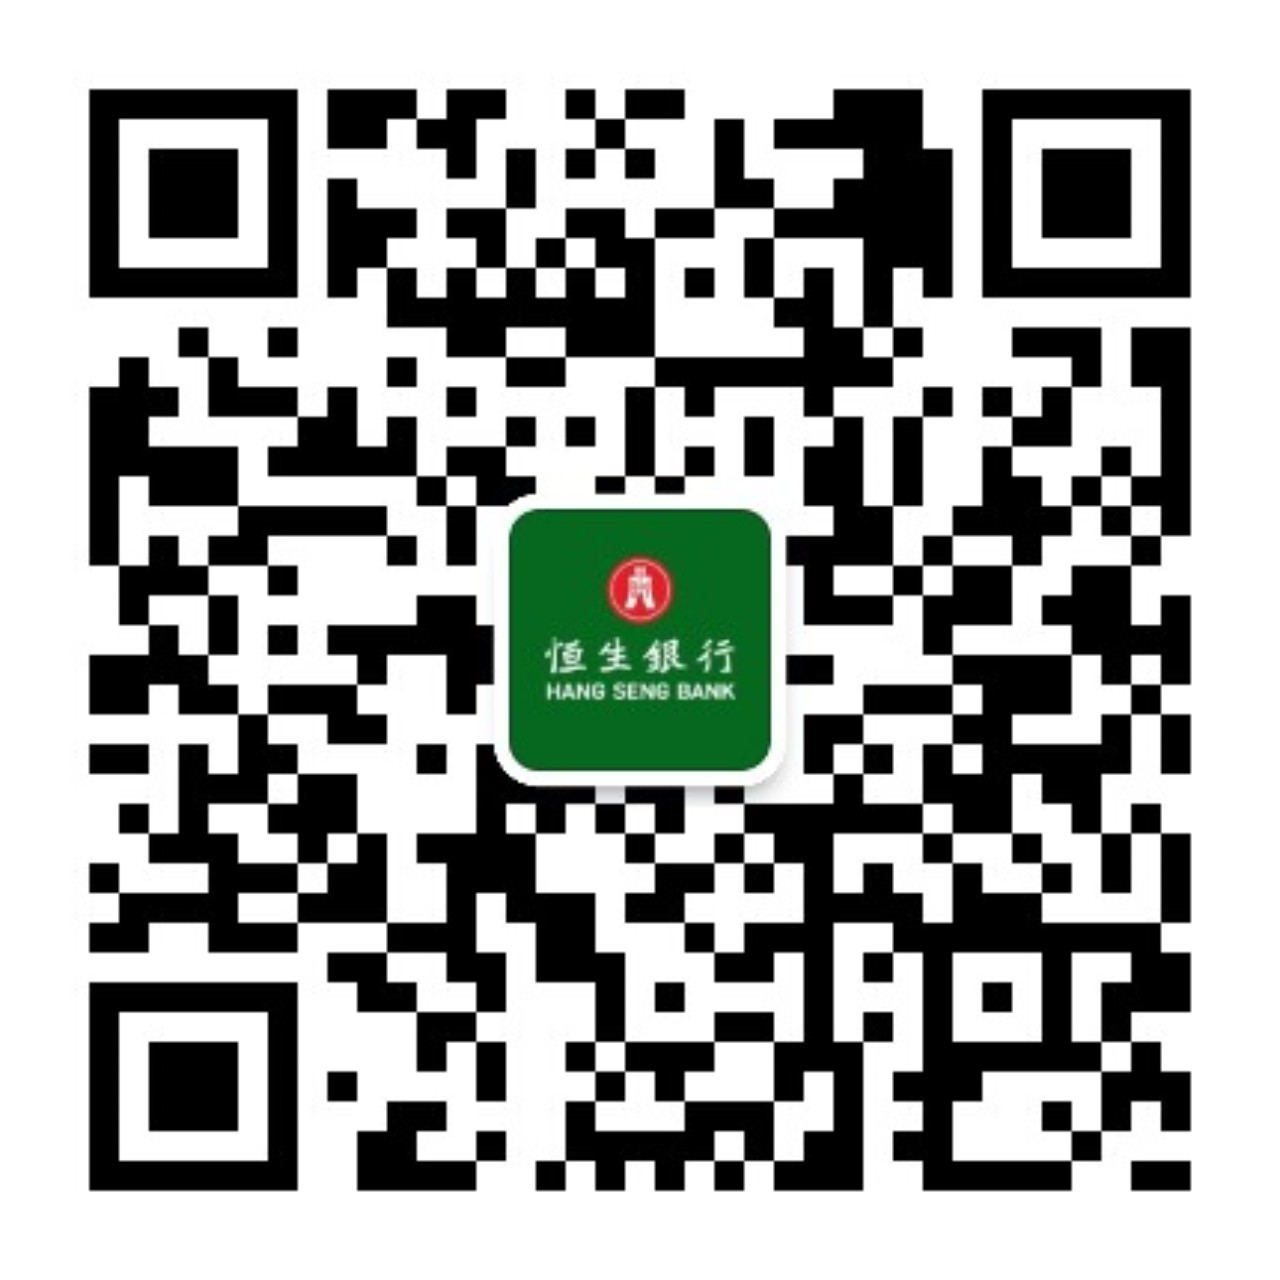 在微信APP中搜索 HangSengHKCMB 或 恒生香港商業理財， 或扫描二维码即可关注我们。